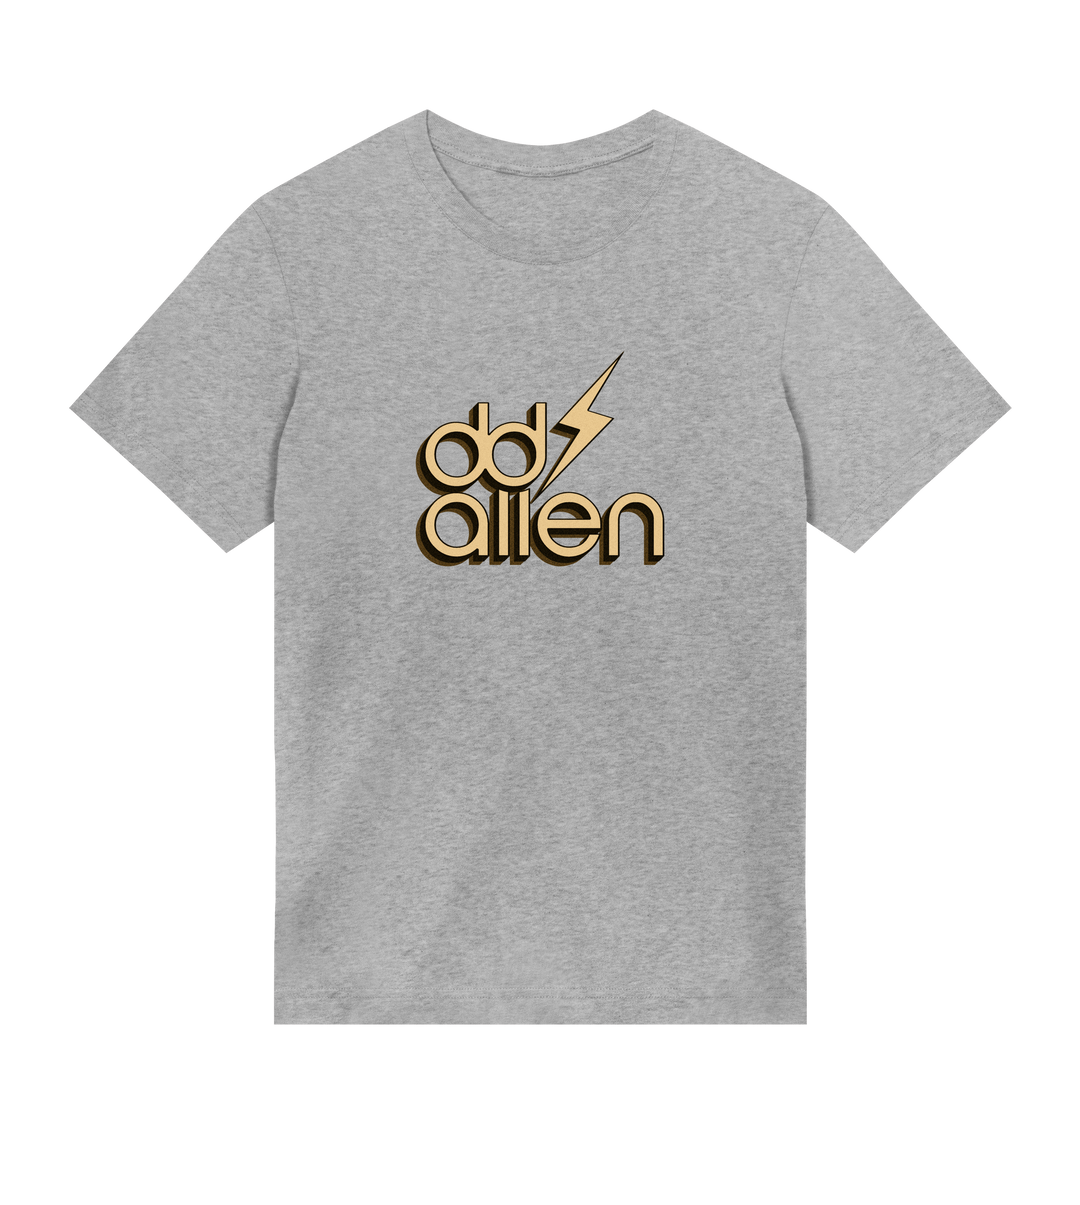 DD Allen - Gold Logo T